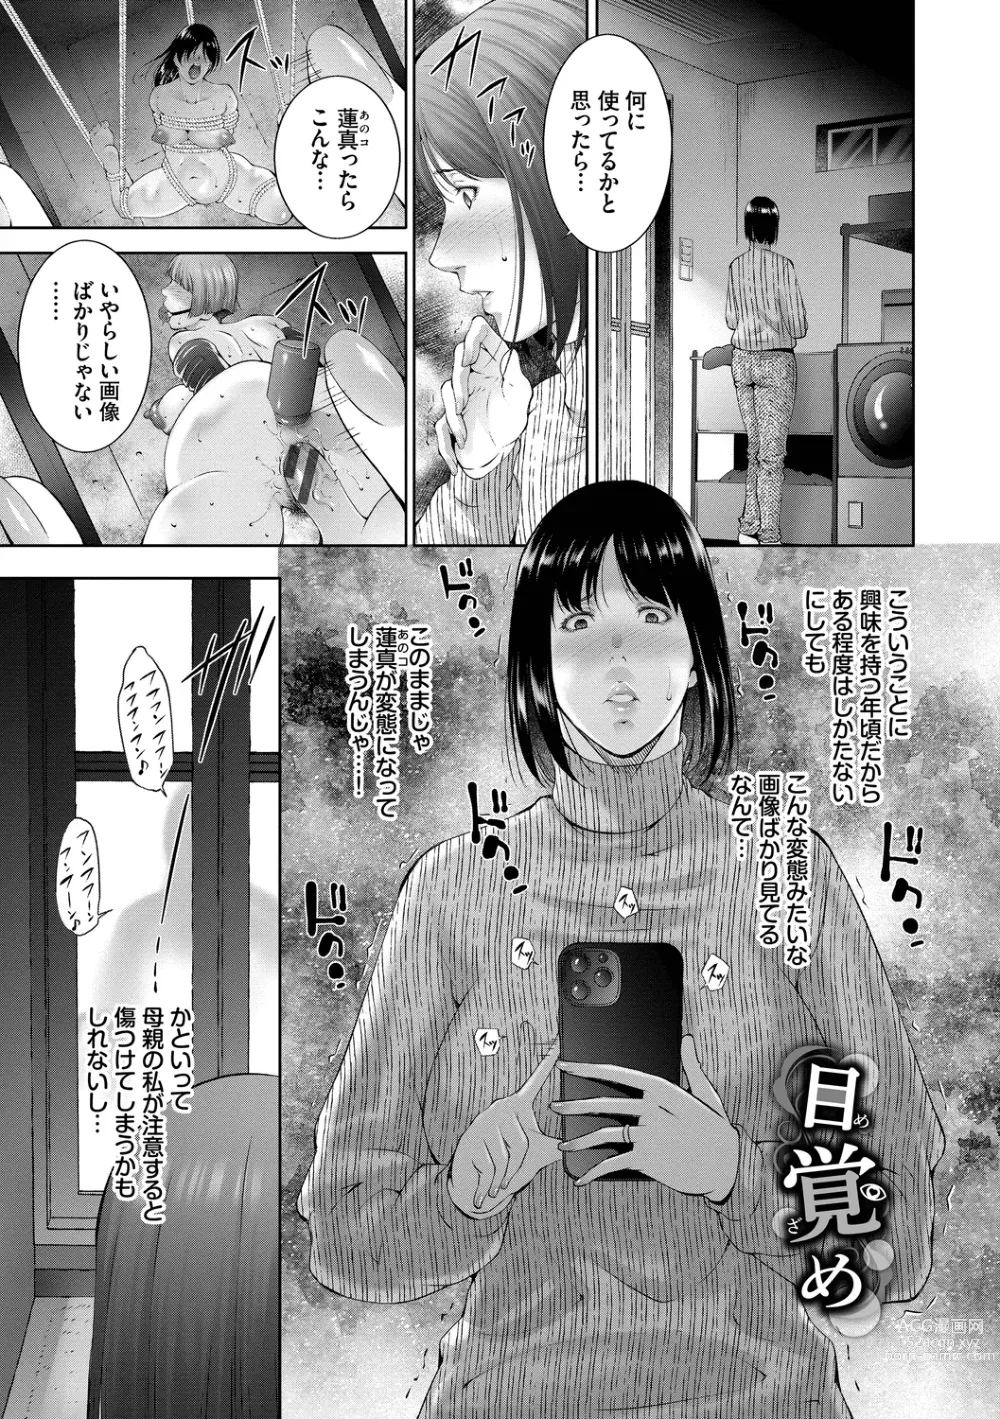 Page 3 of manga Lust Maternity